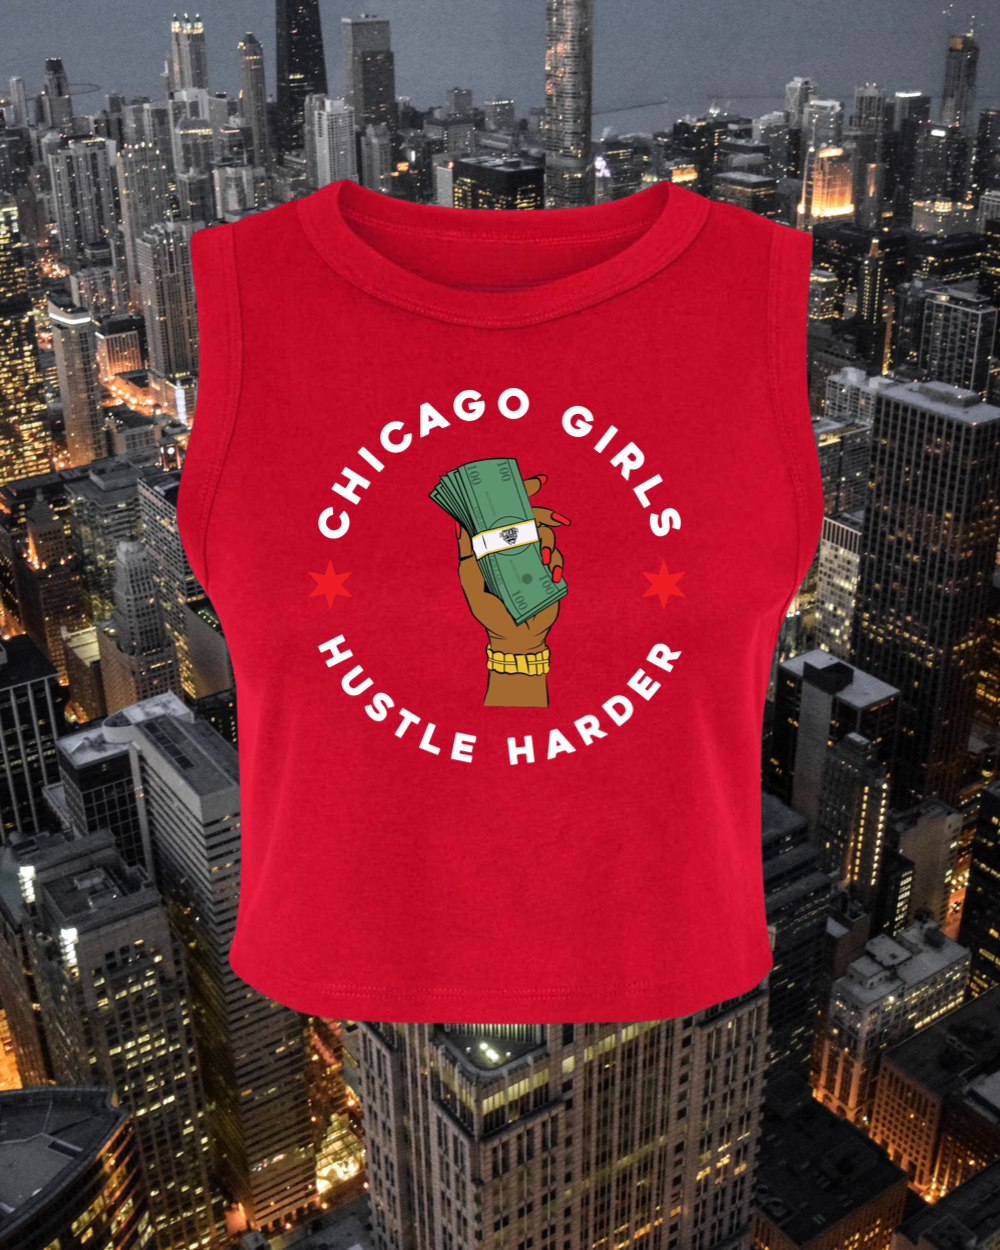 Chicago Girls Hustle Harder Crop Tank